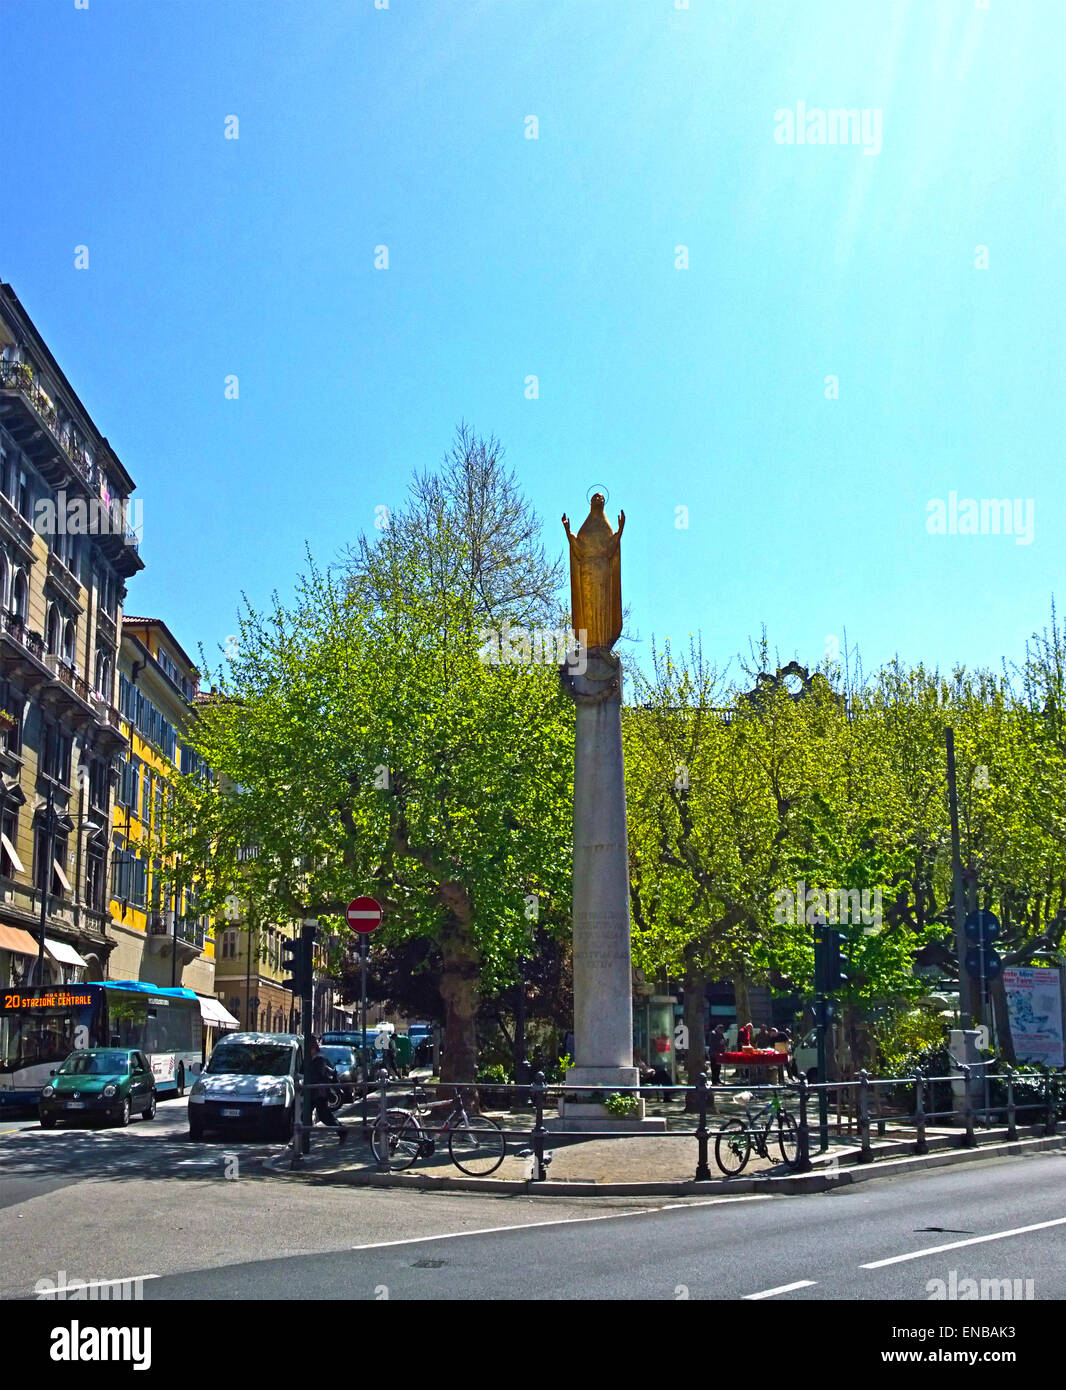 Trieste, Italia - Piazza Garibaldi con un pequeño parque en el centro de plaza y golden Madonnina estatua en pilar Foto de stock